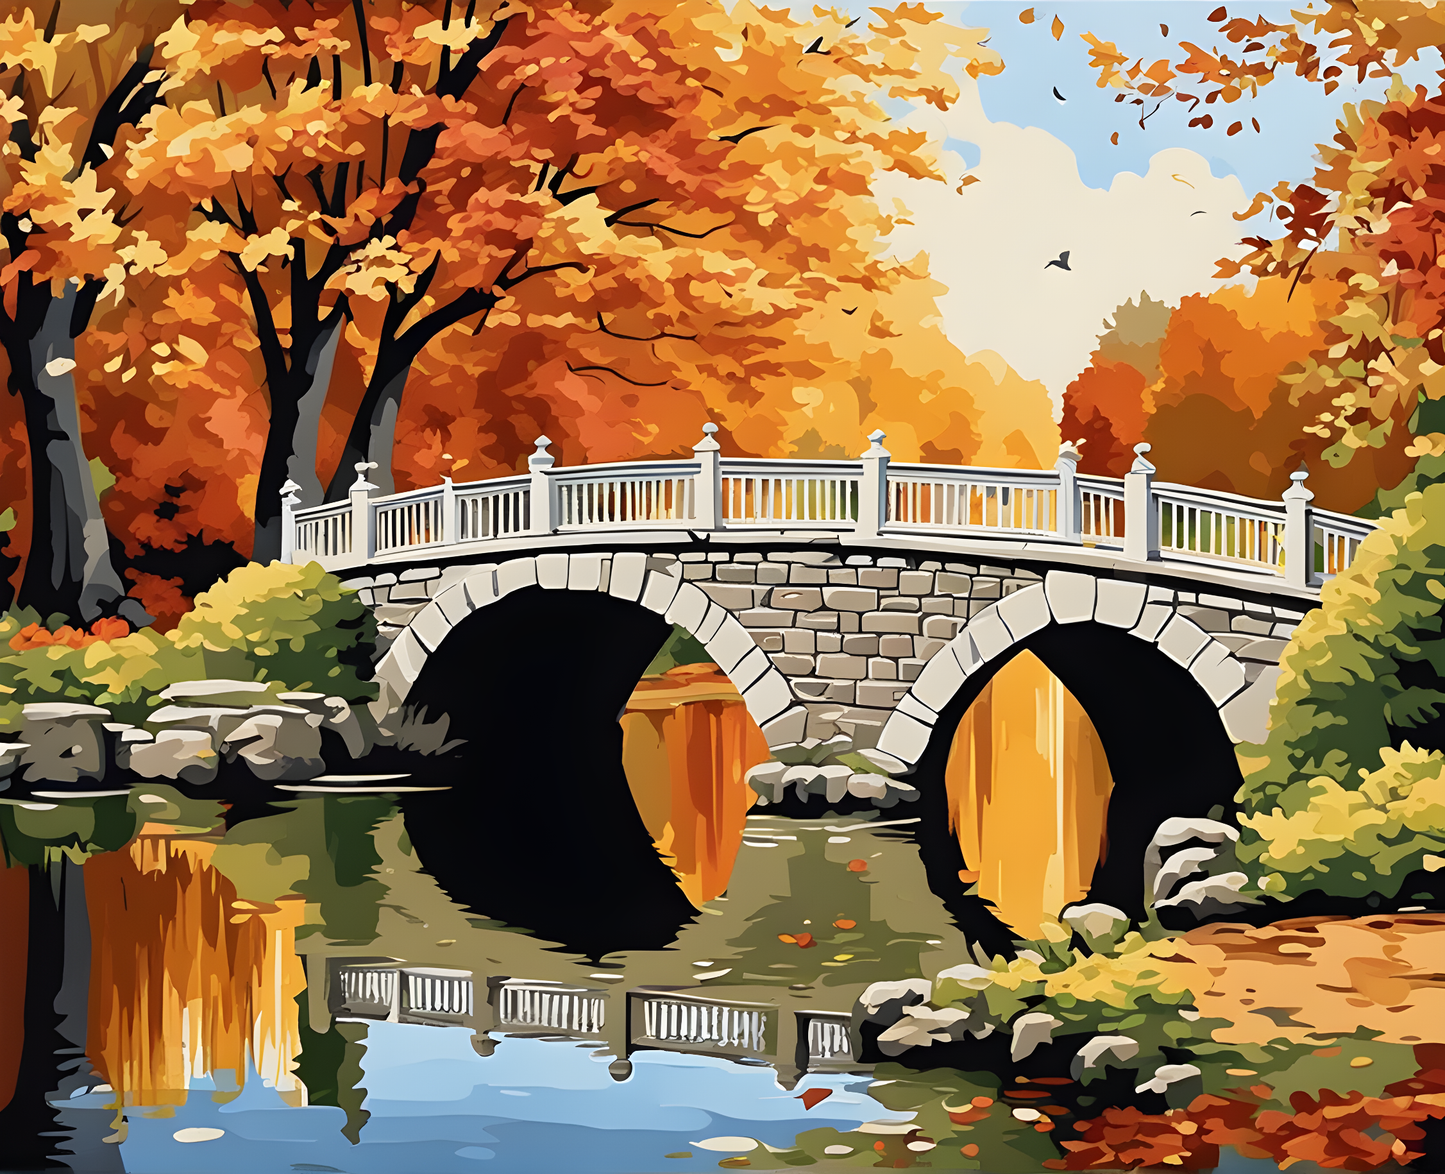 Autumn Park Bridge - Van-Go Paint-By-Number Kit